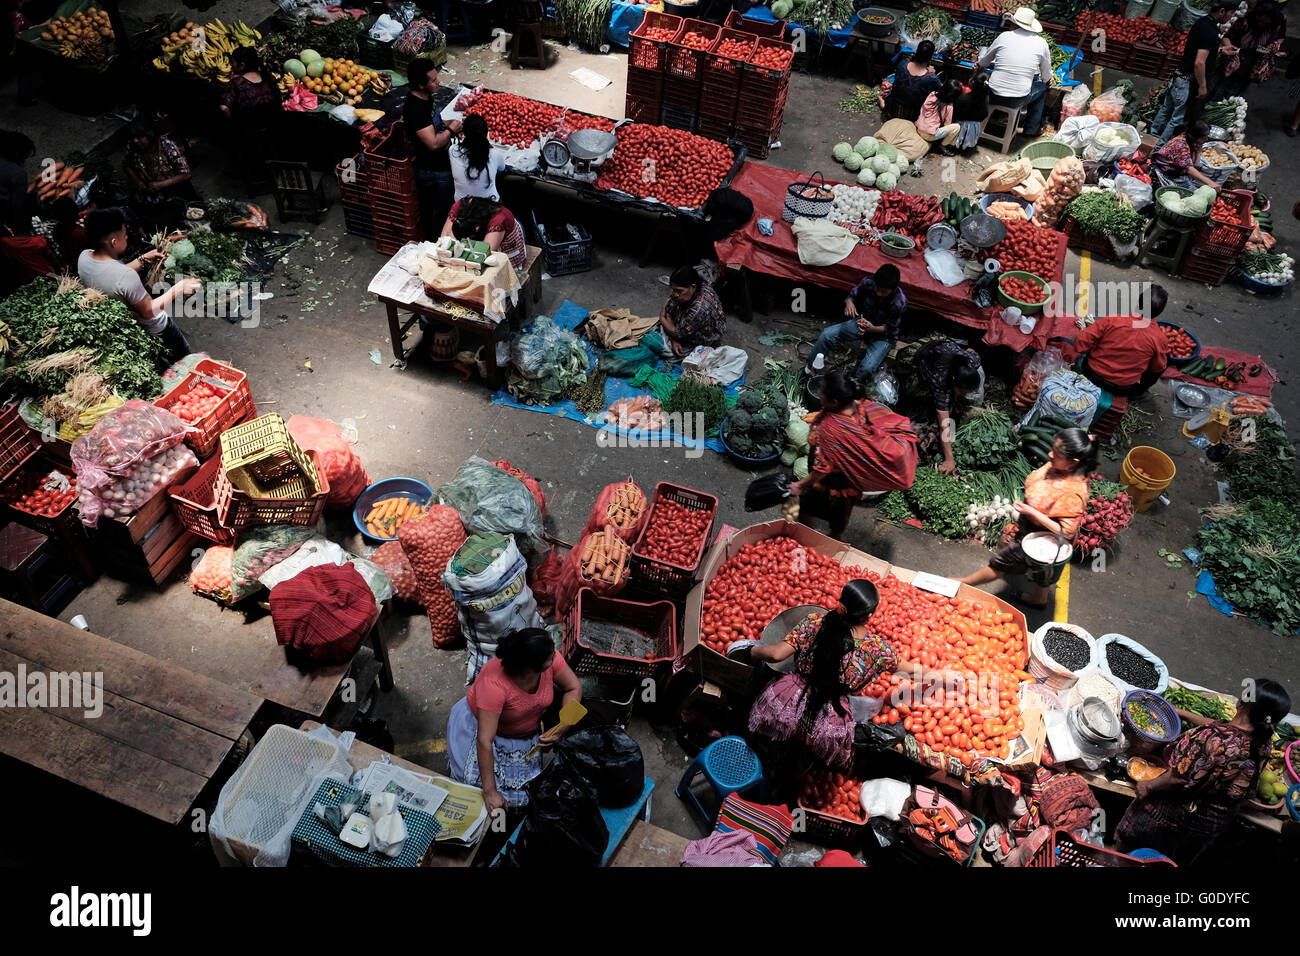 Les vendeurs de fruits et légumes au marché de Chichicastenango également connu sous le nom de Santo Tomás Chichicastenango une ville dans le département de Guatemala El Quiché, connu pour sa culture Maya Kiche traditionnels. Banque D'Images